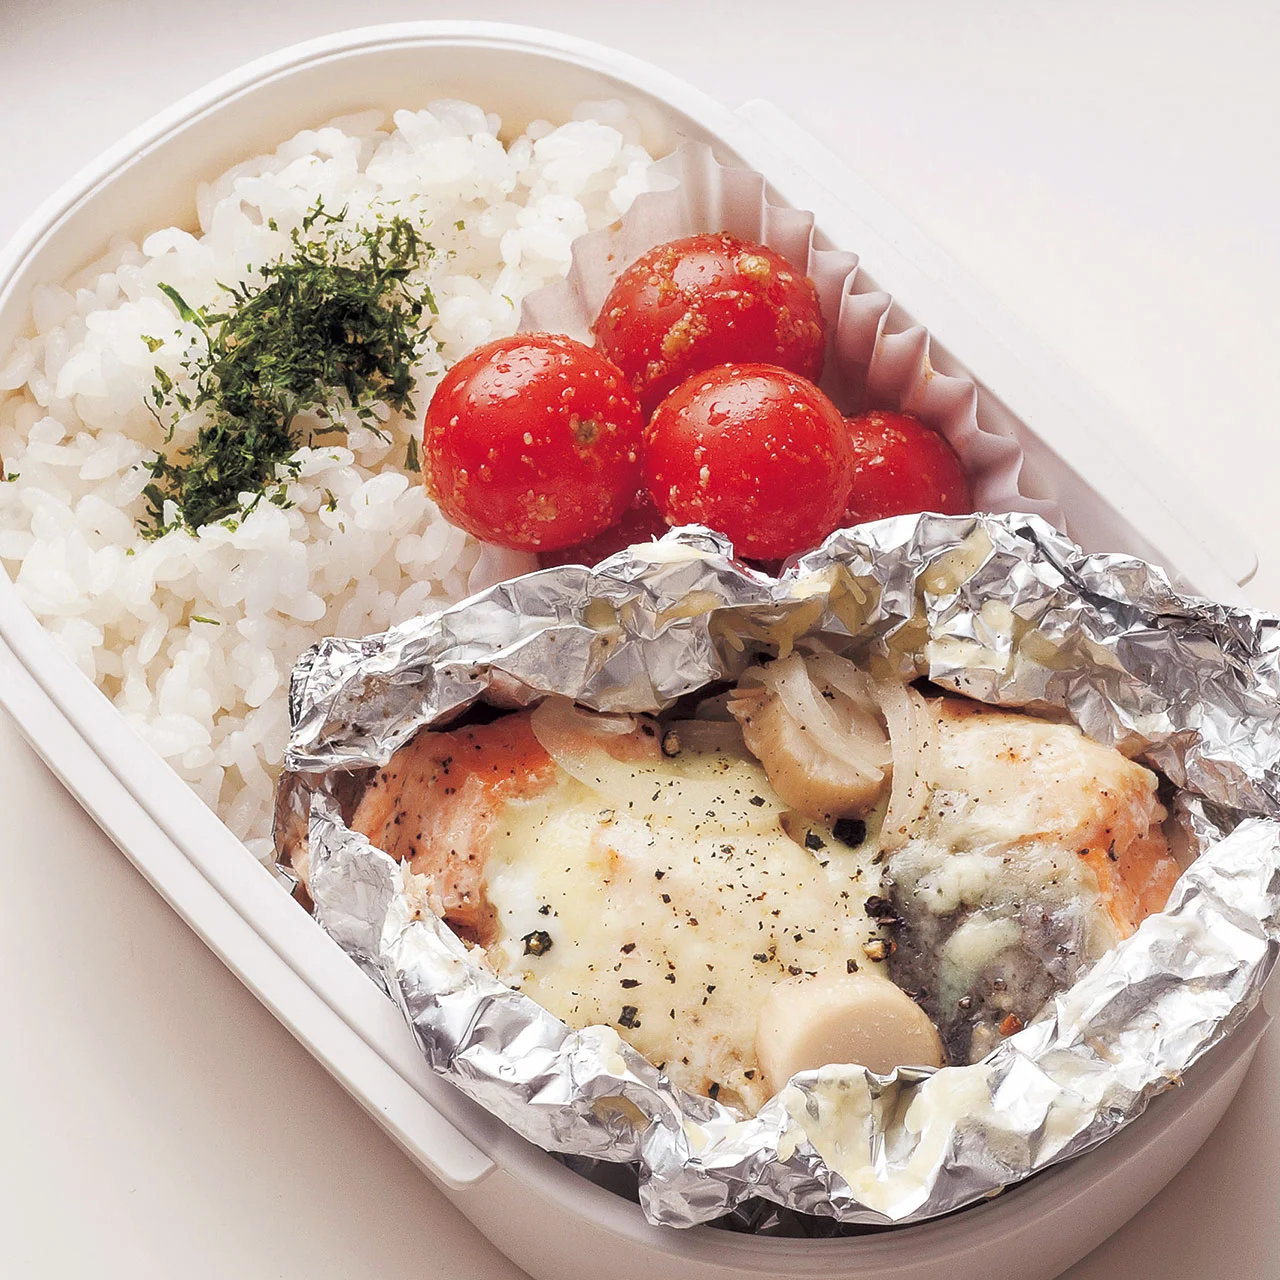 鮭の蒸しチーズ焼き弁当 By牧野直子さんの料理レシピ プロのレシピならレタスクラブ